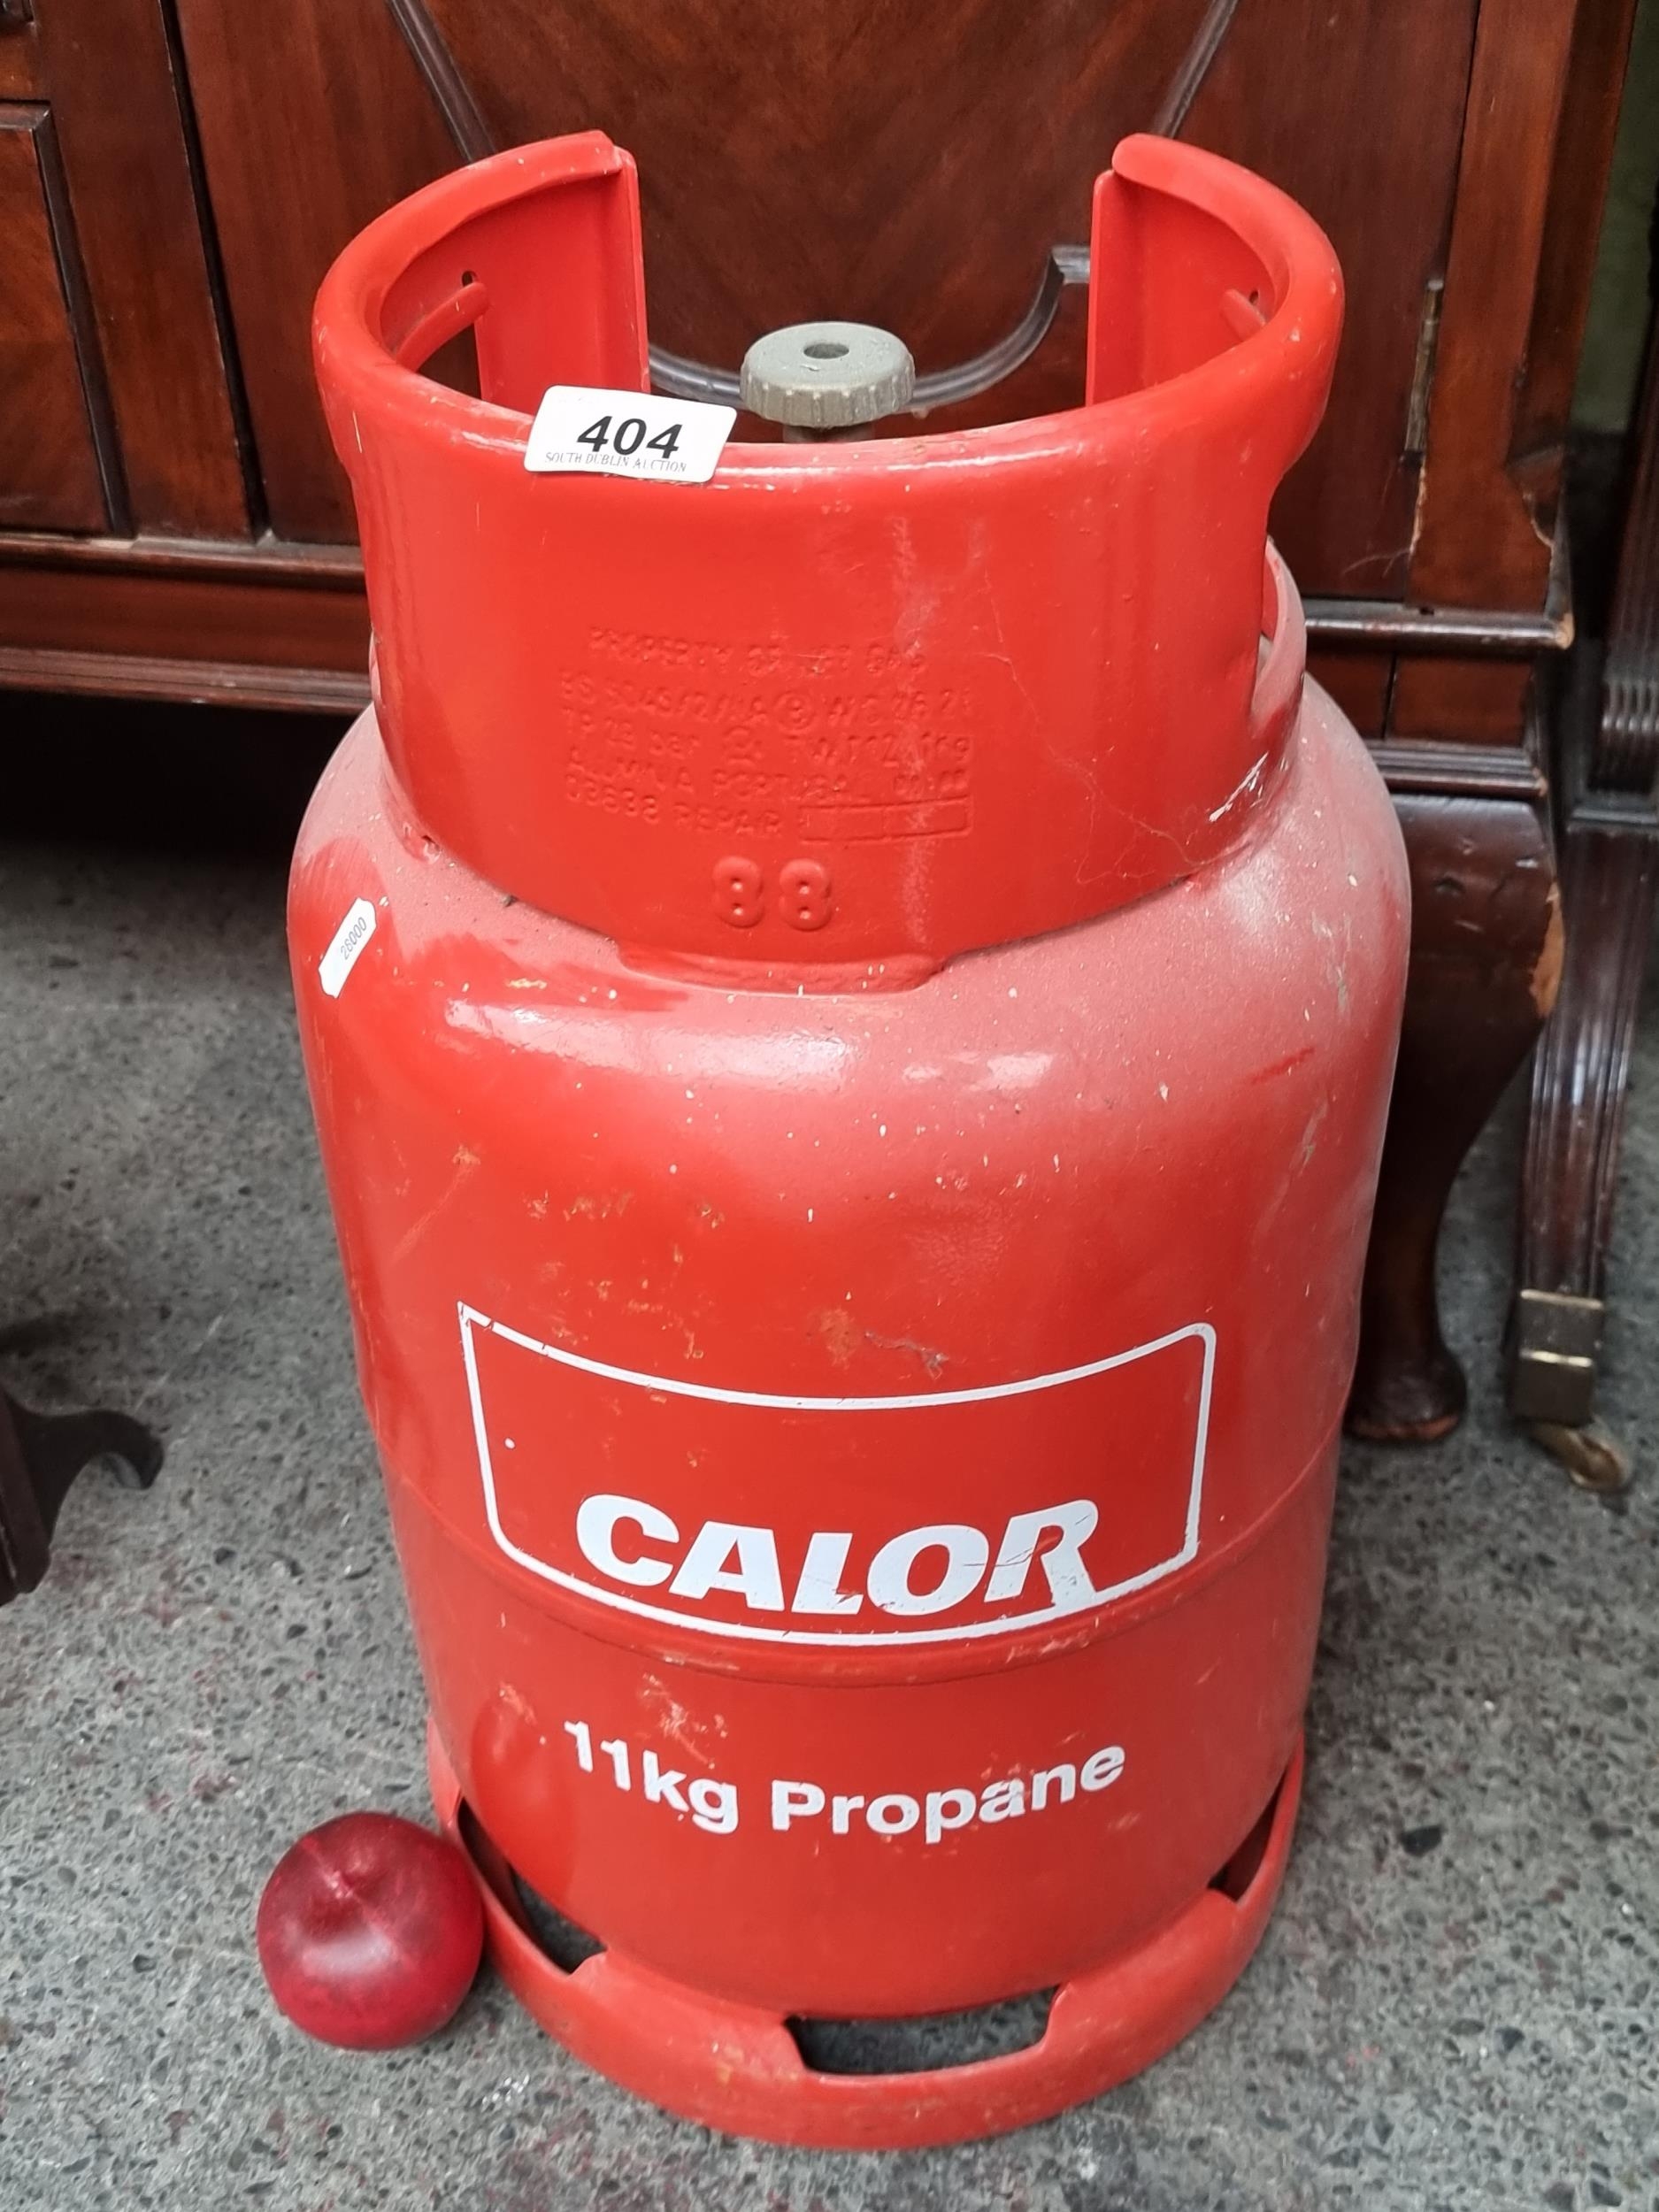 11kg Propane gas bottle